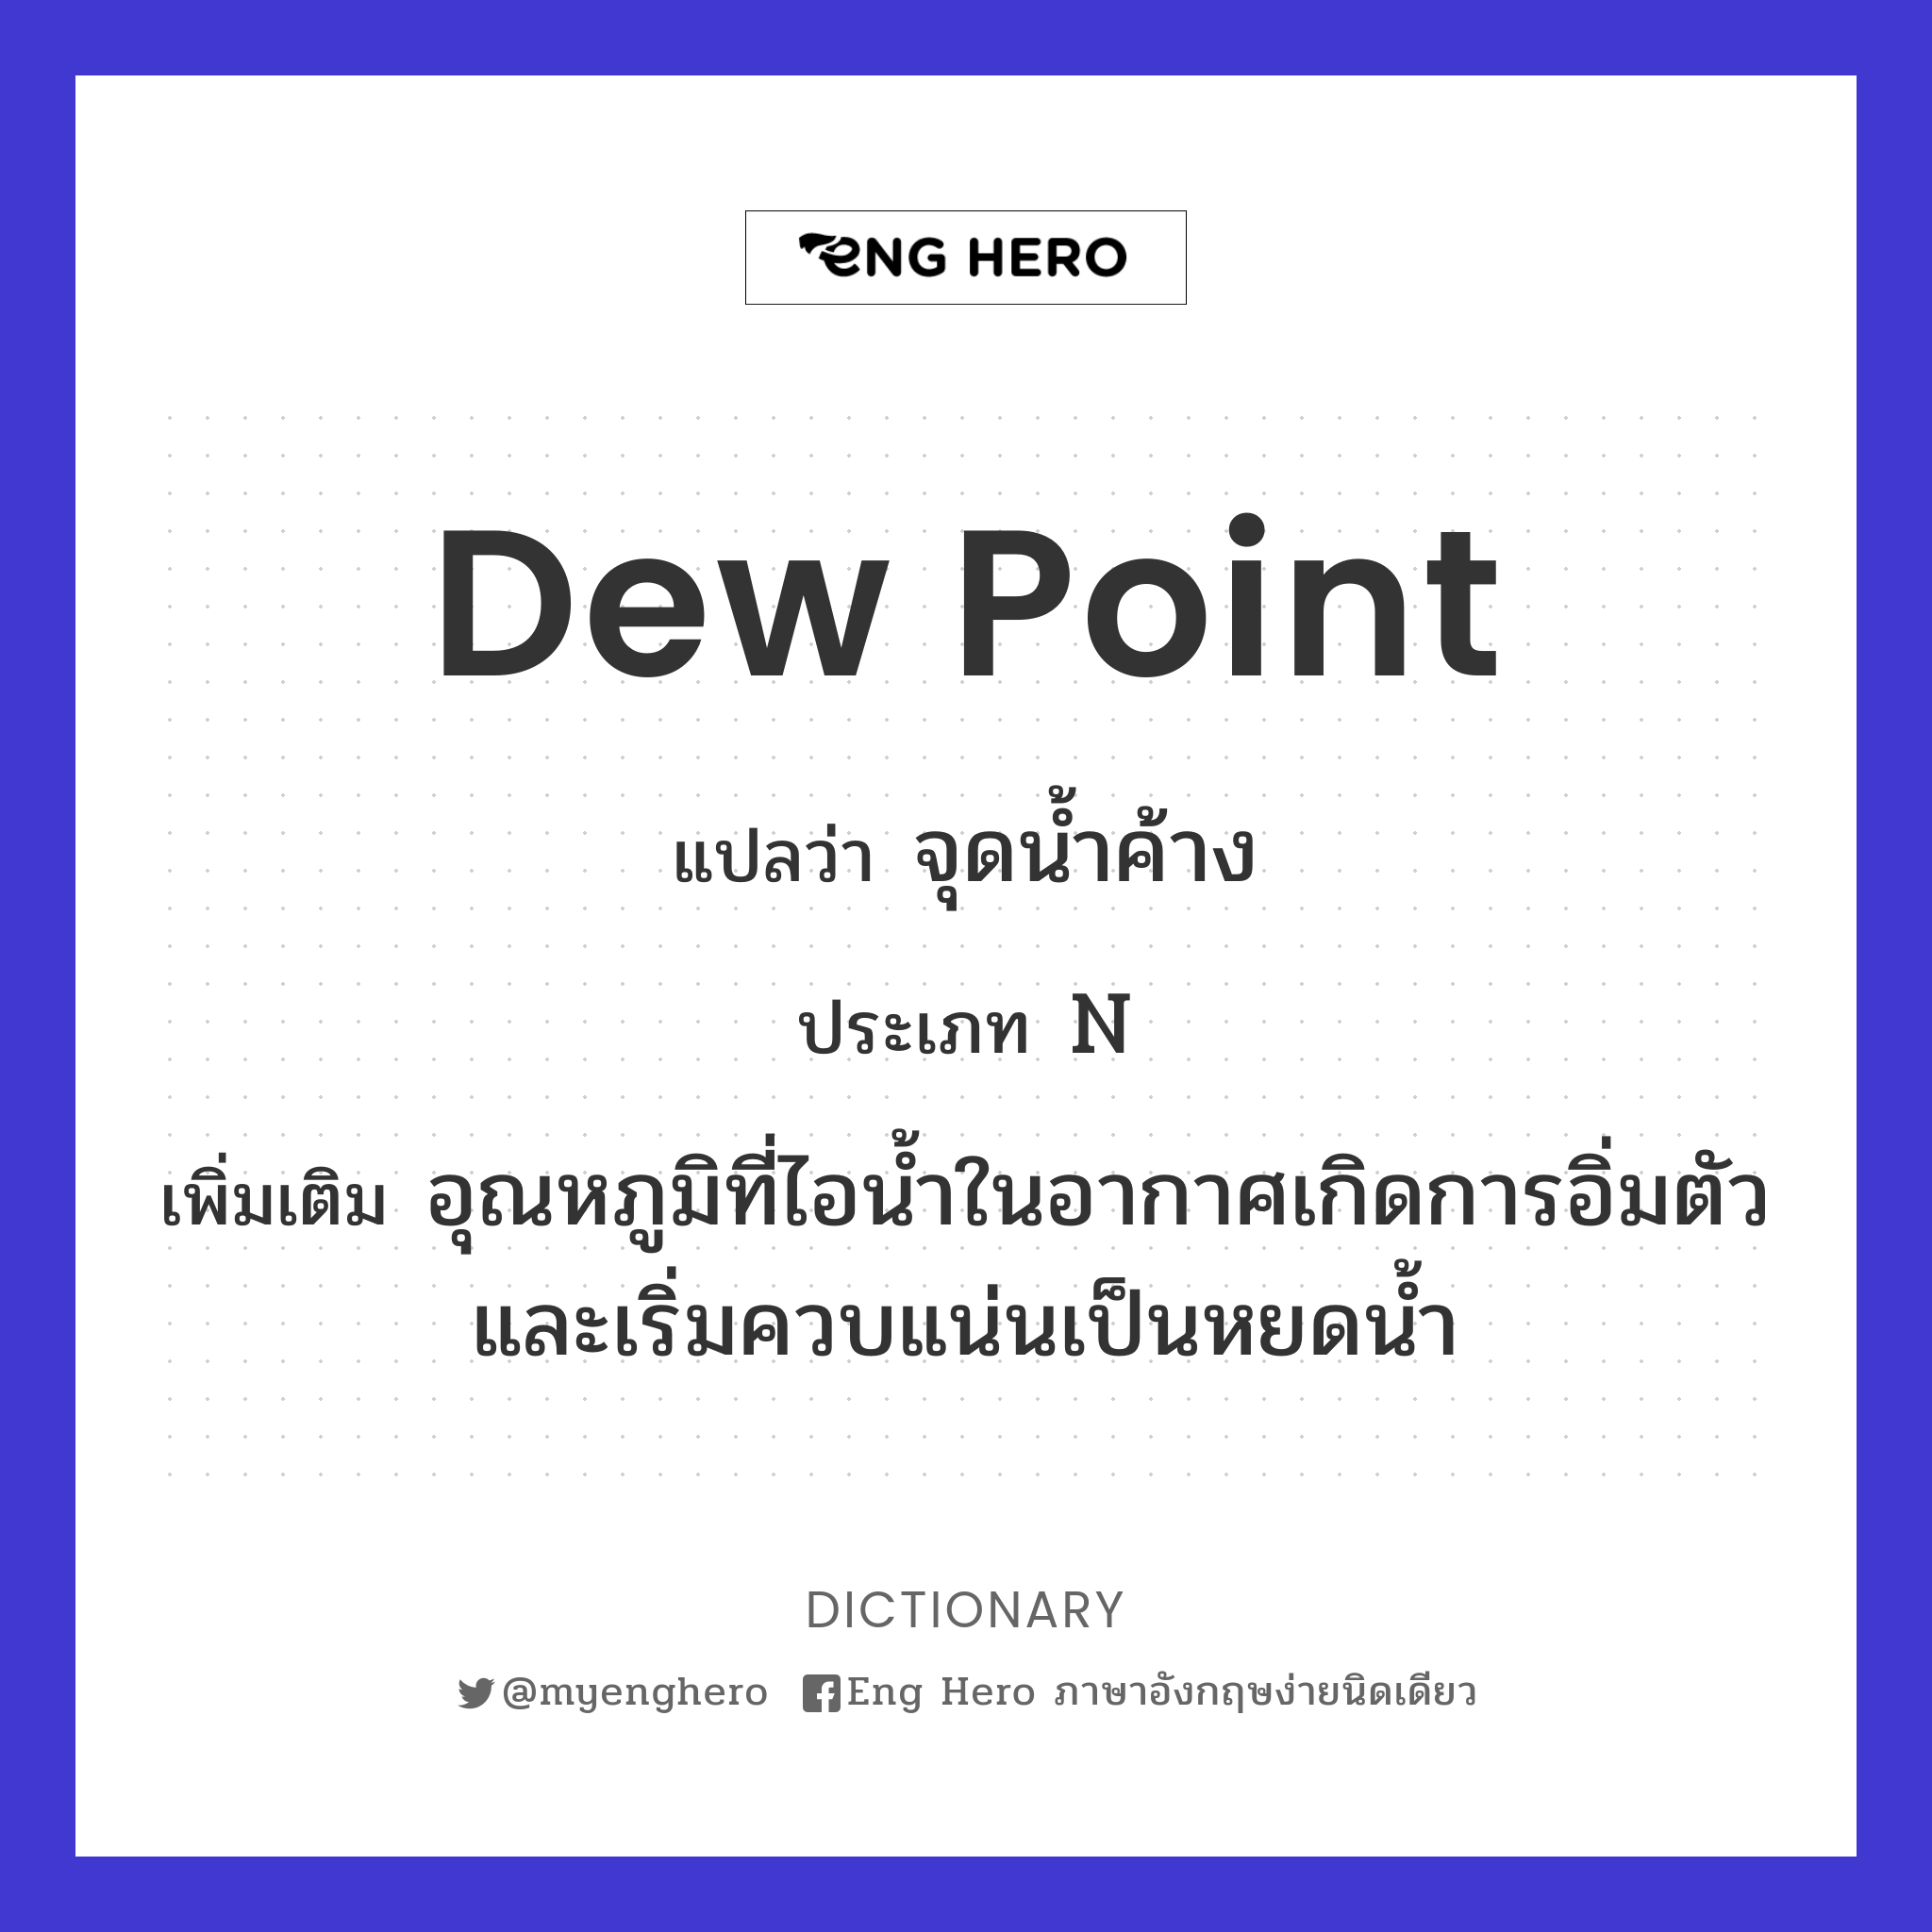 dew point